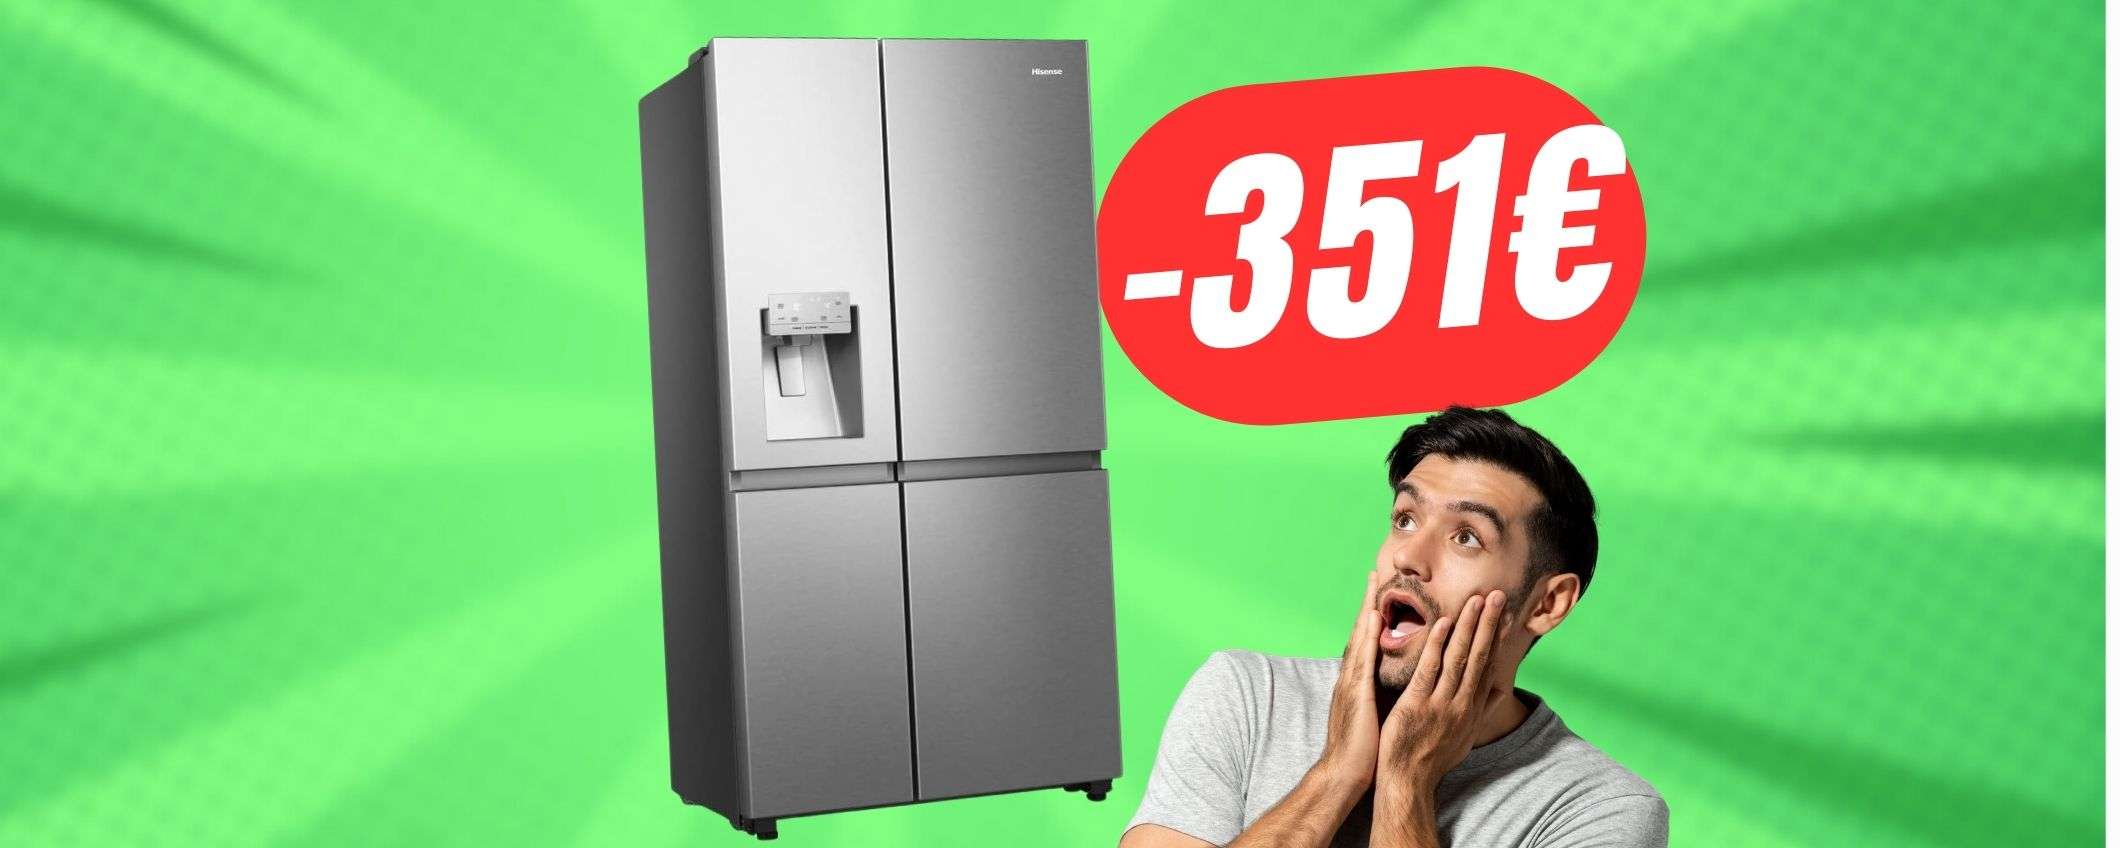 Porta l'America a casa tua con il super-frigorifero Hisense (a -351€ in meno!)